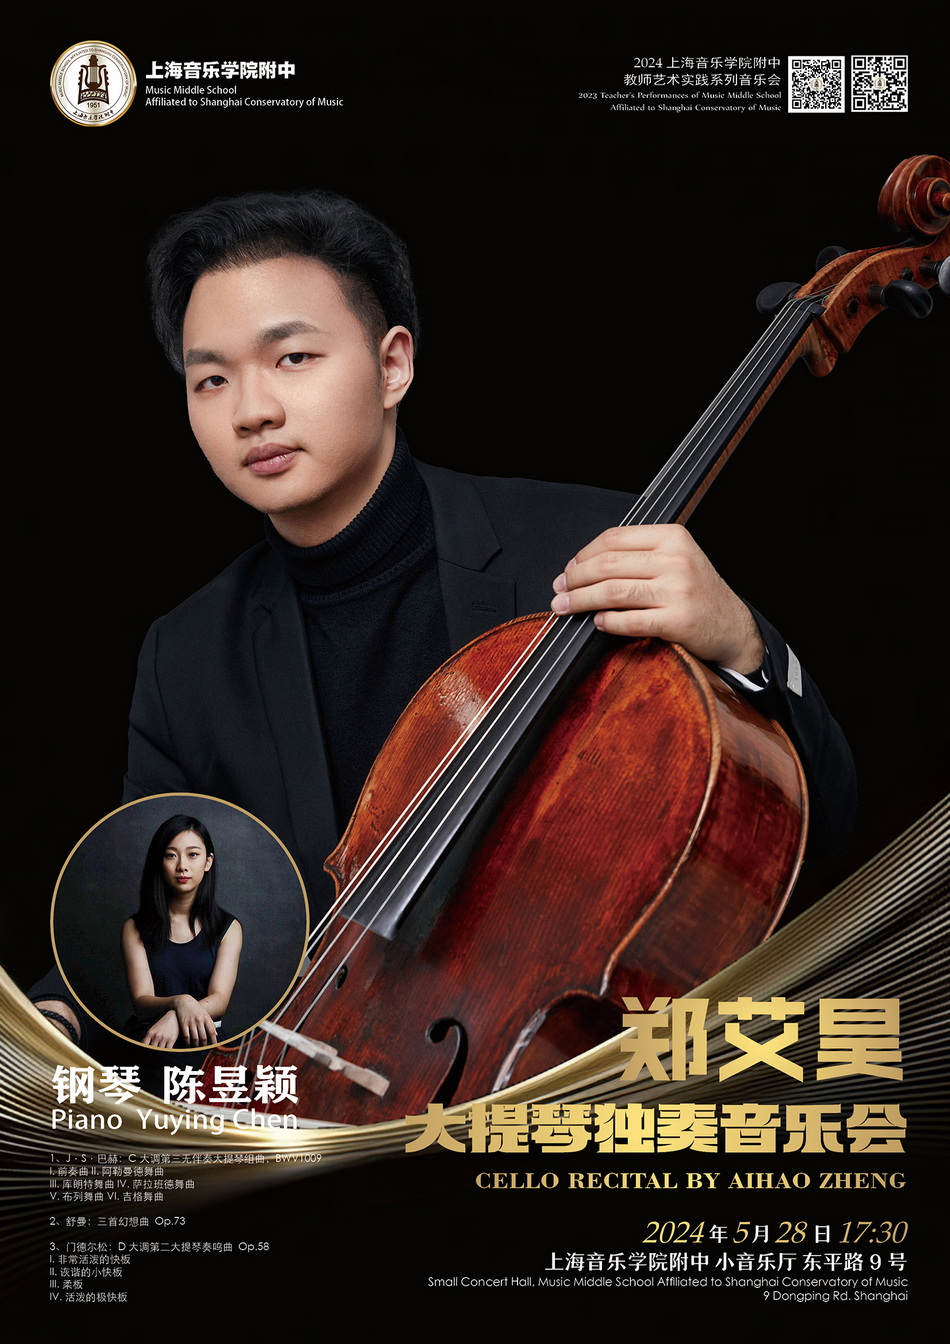 05-28 郑艾昊大提琴独奏音乐会